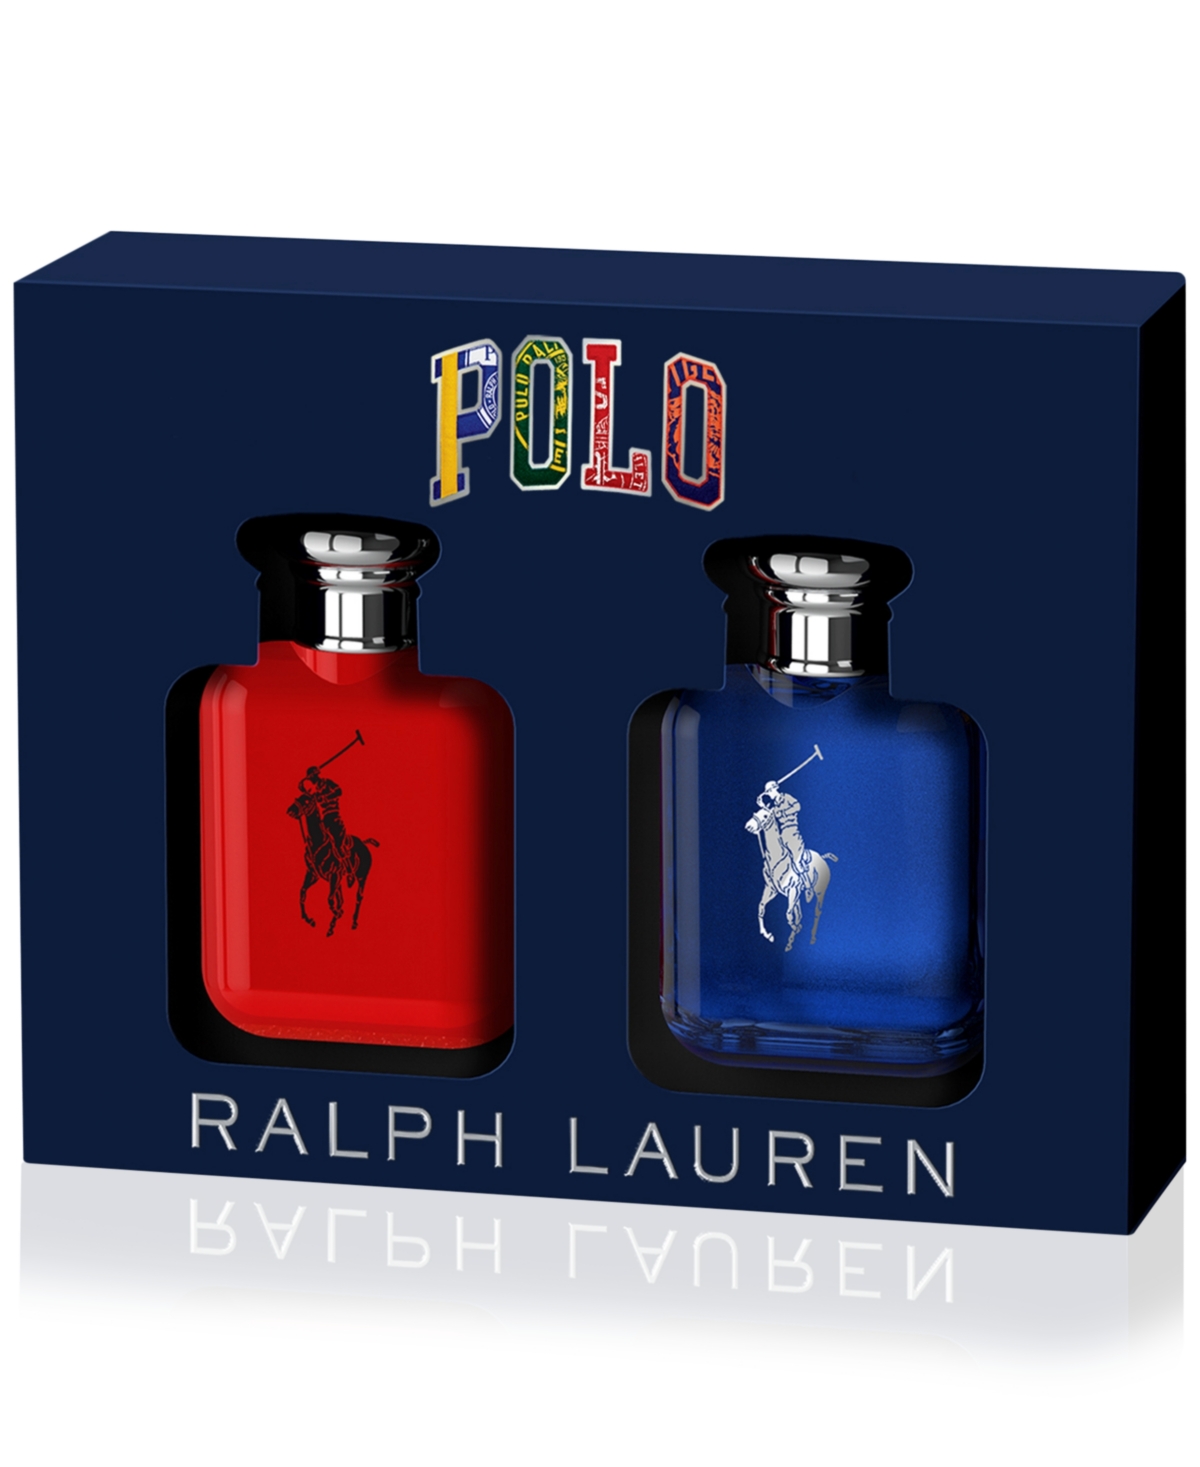 Ralph Lauren Men's 2-Pc. World Of Polo Eau de Toilette Gift Set $25.50